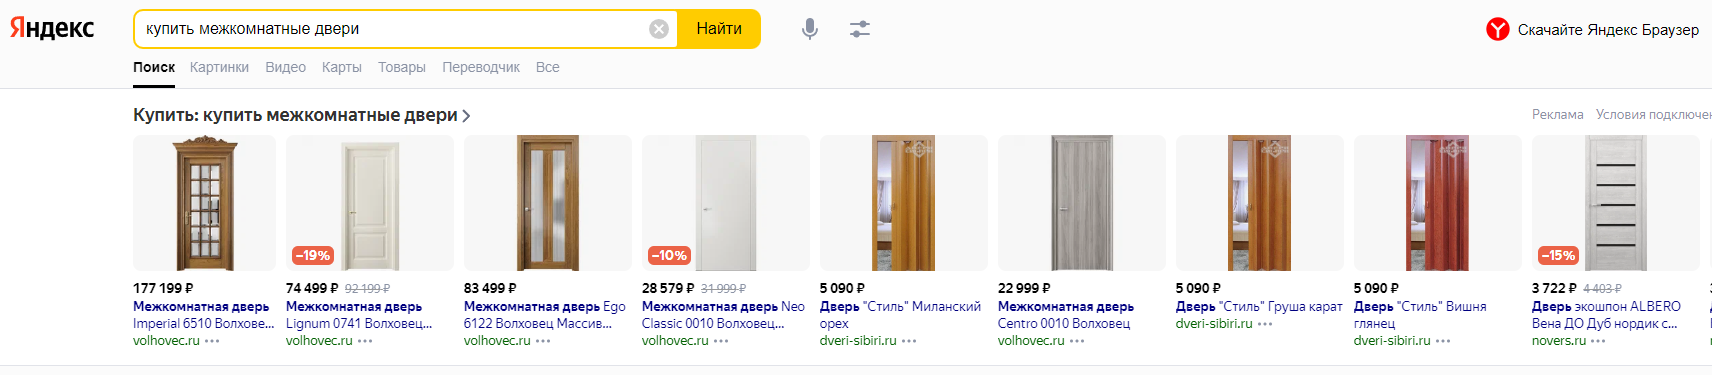 Поиск Y2: чего ожидать от новых обновлений Яндекса и как это поможет пользователям